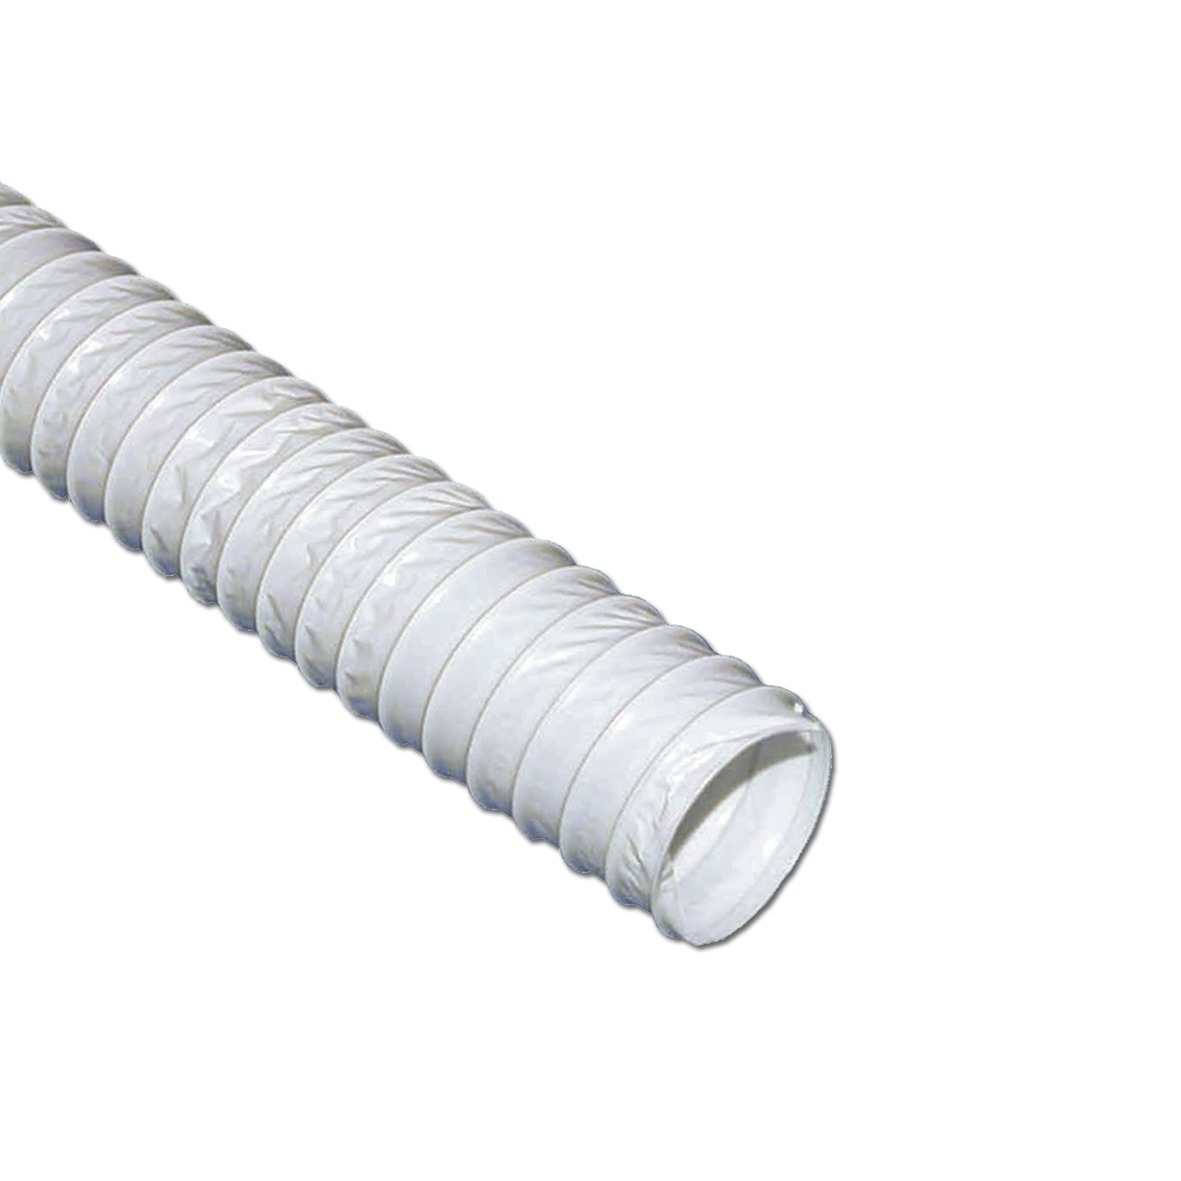 NEU Abluftschlauch Ø100mm PVC Stahlspiral